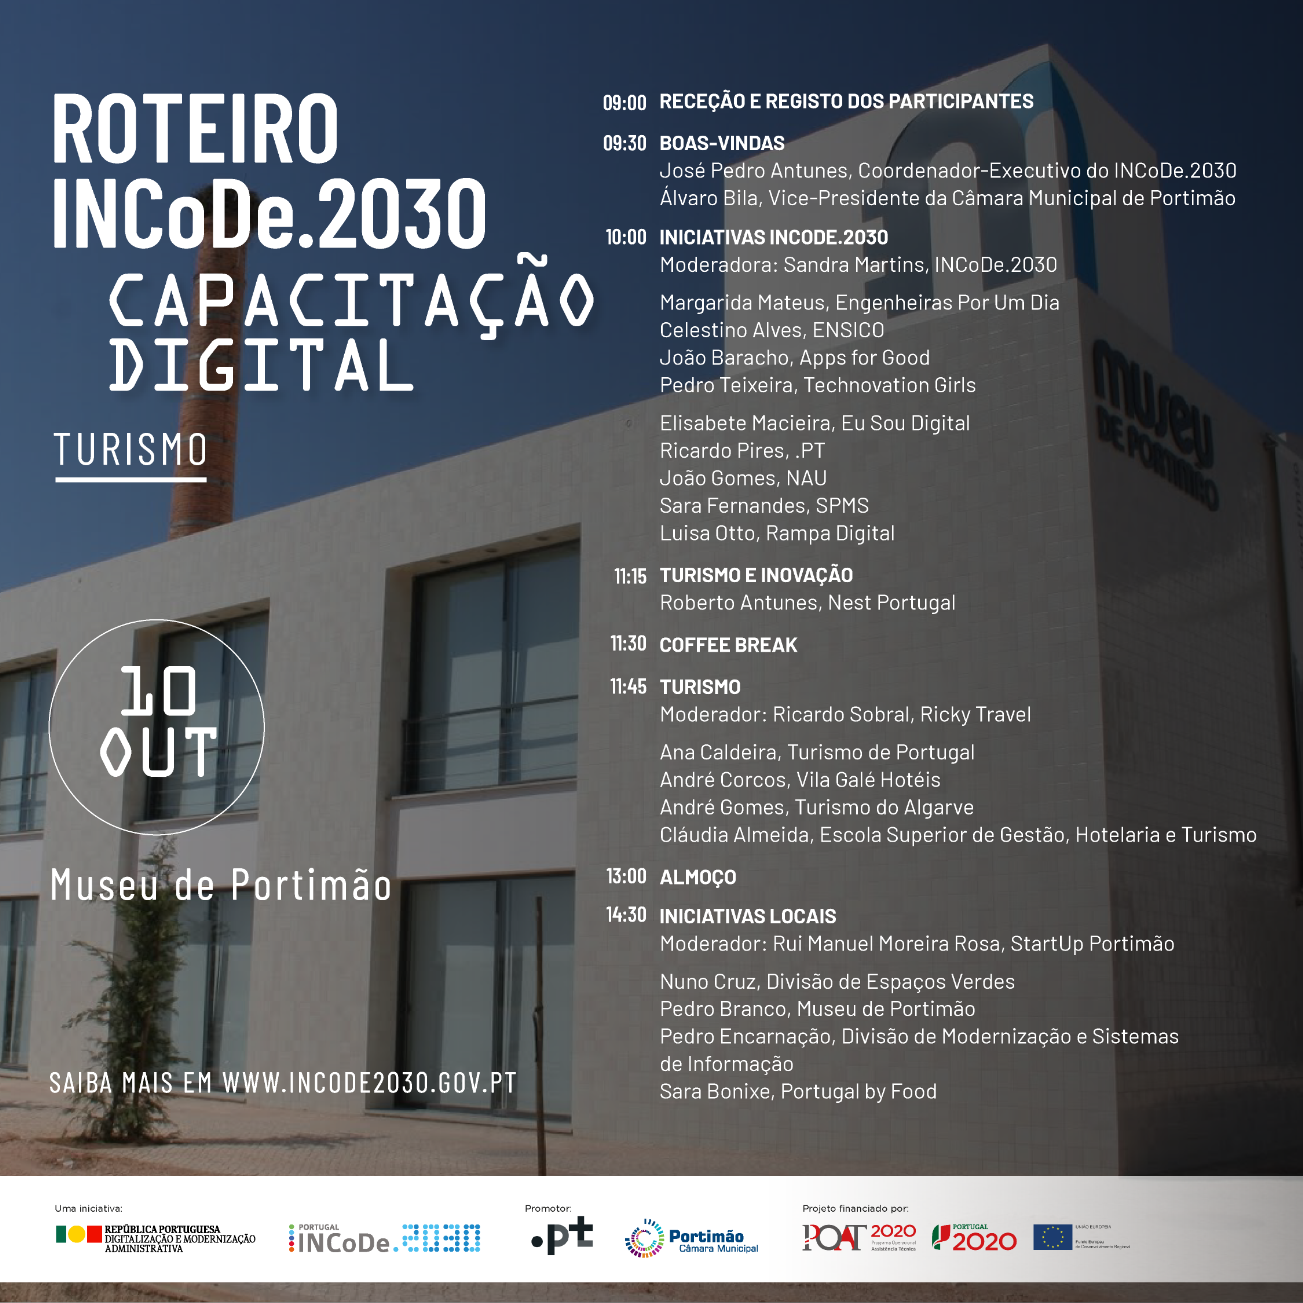 Portimão recebe Roteiro INCoDe.2030 dedicado ao Turismo